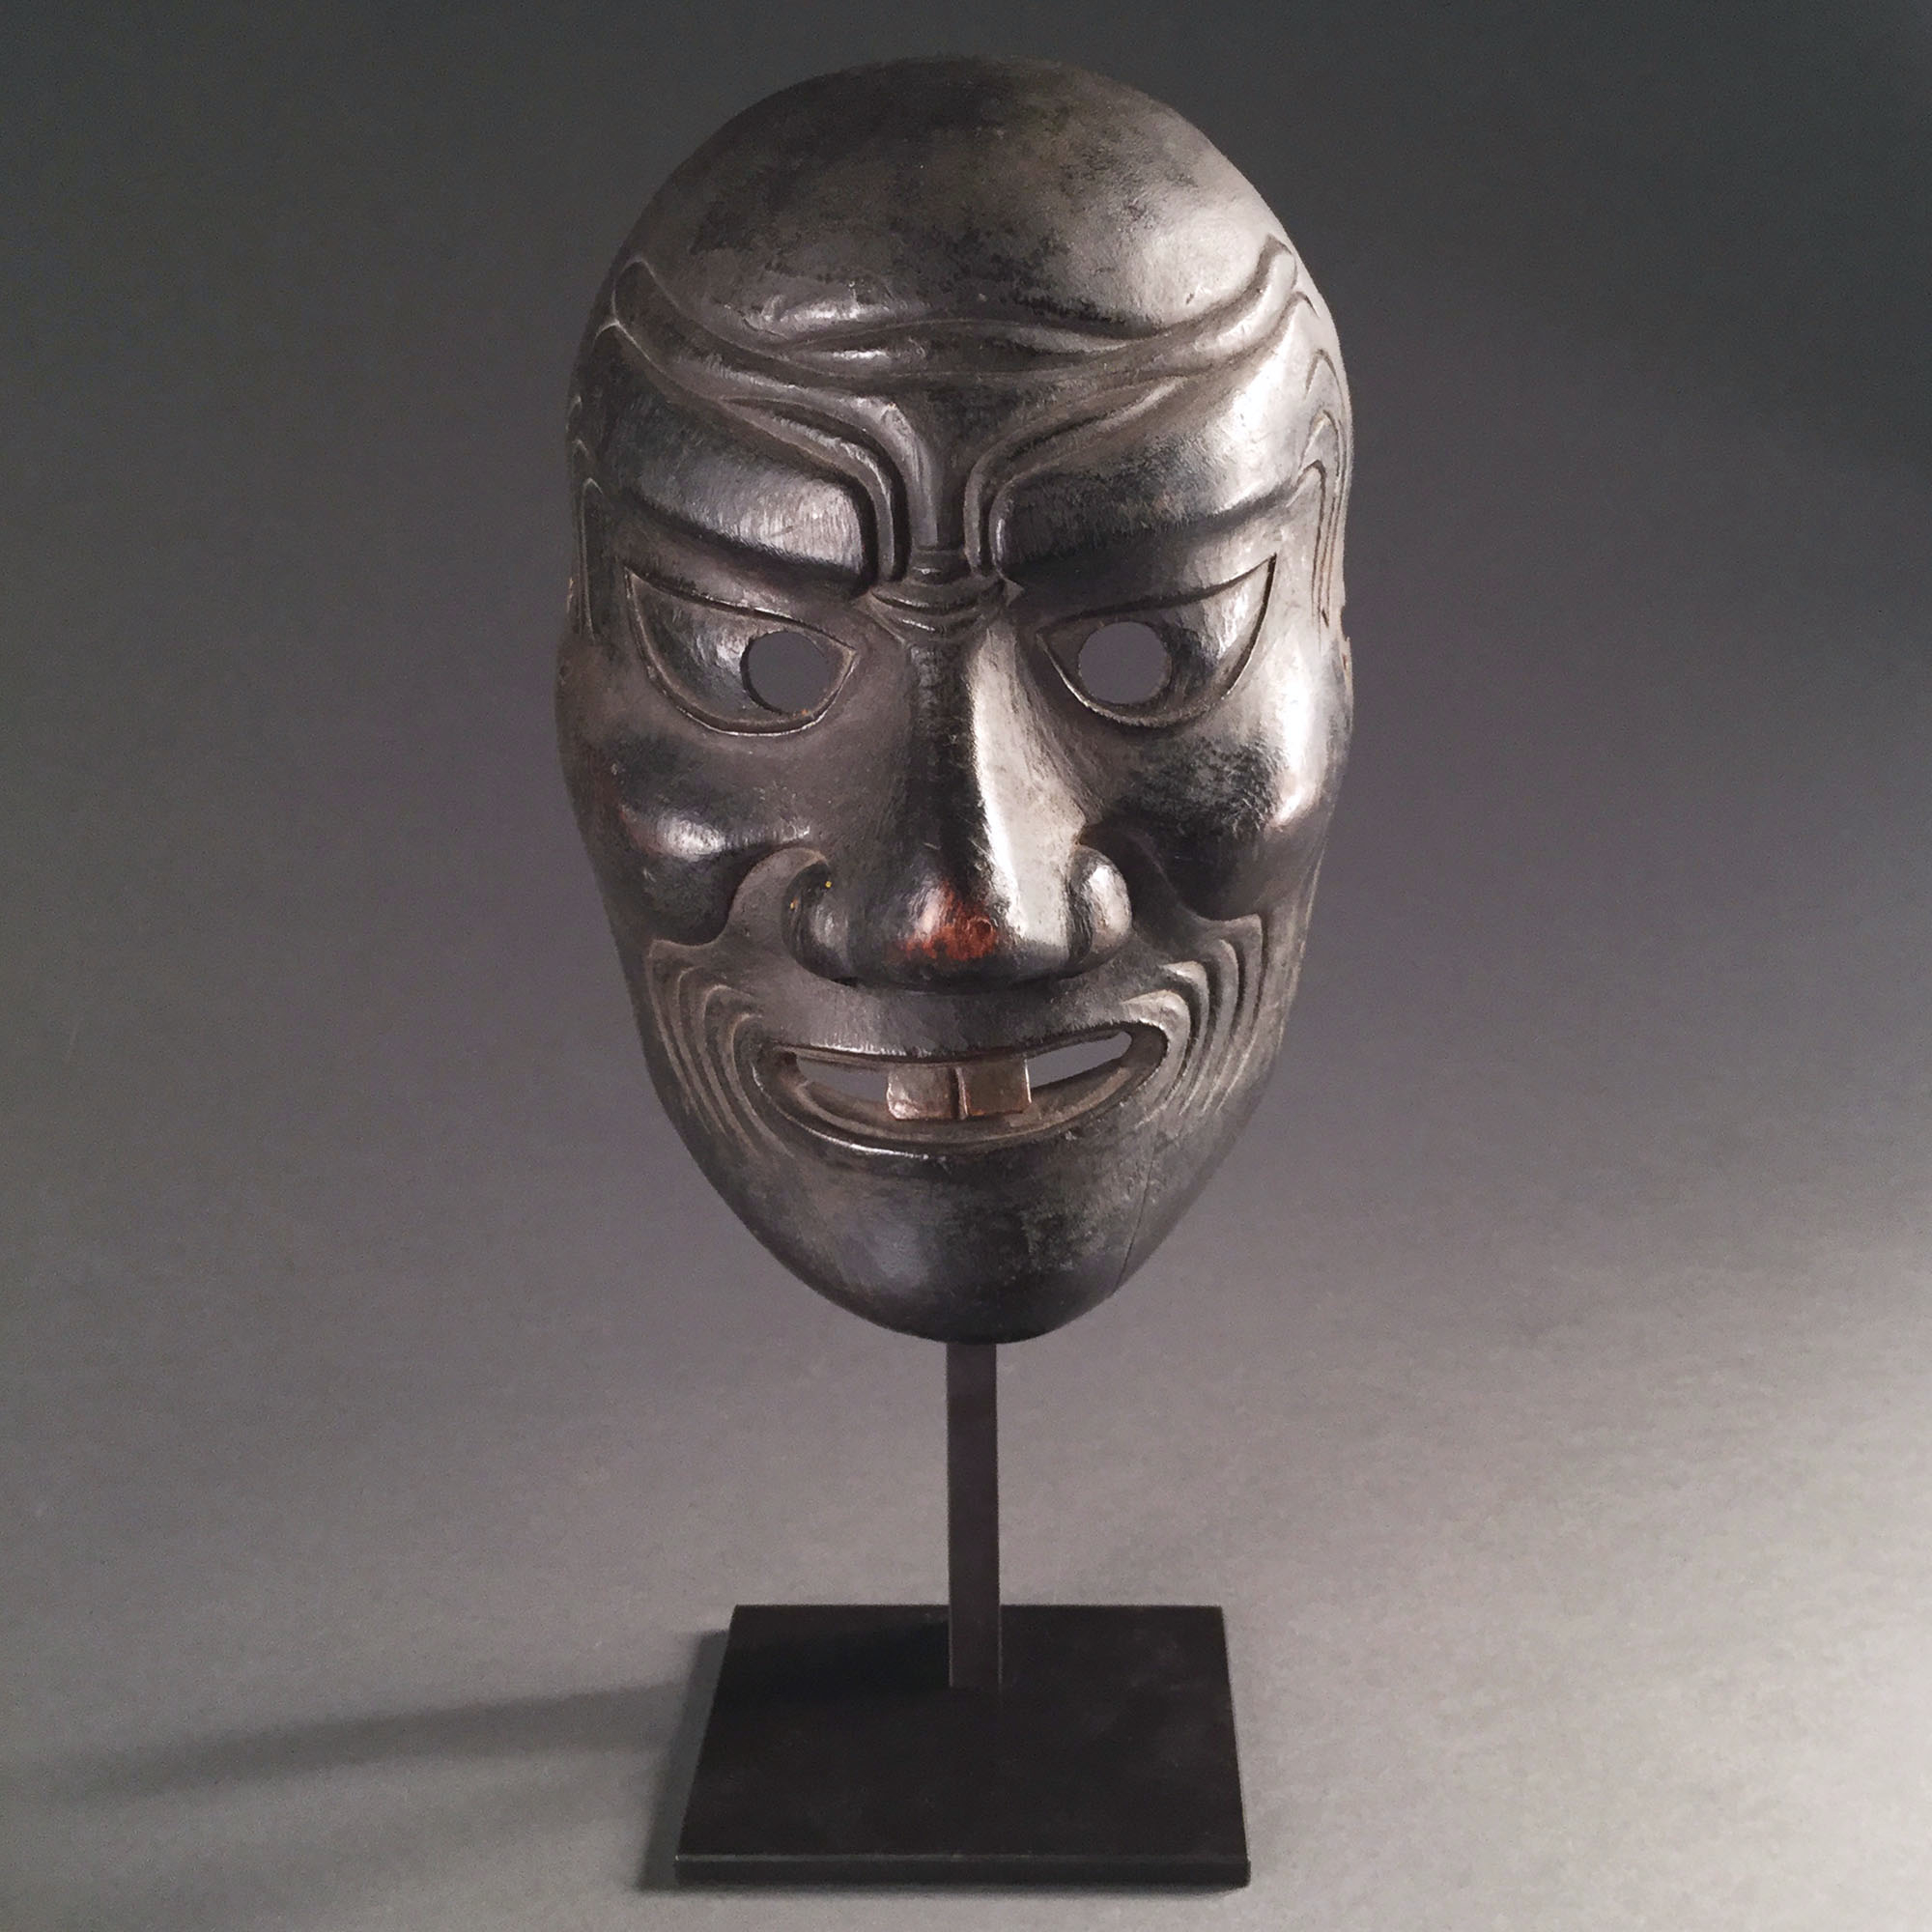 Japon, masque sculpté, époque Edo, 17-18ème siècle.